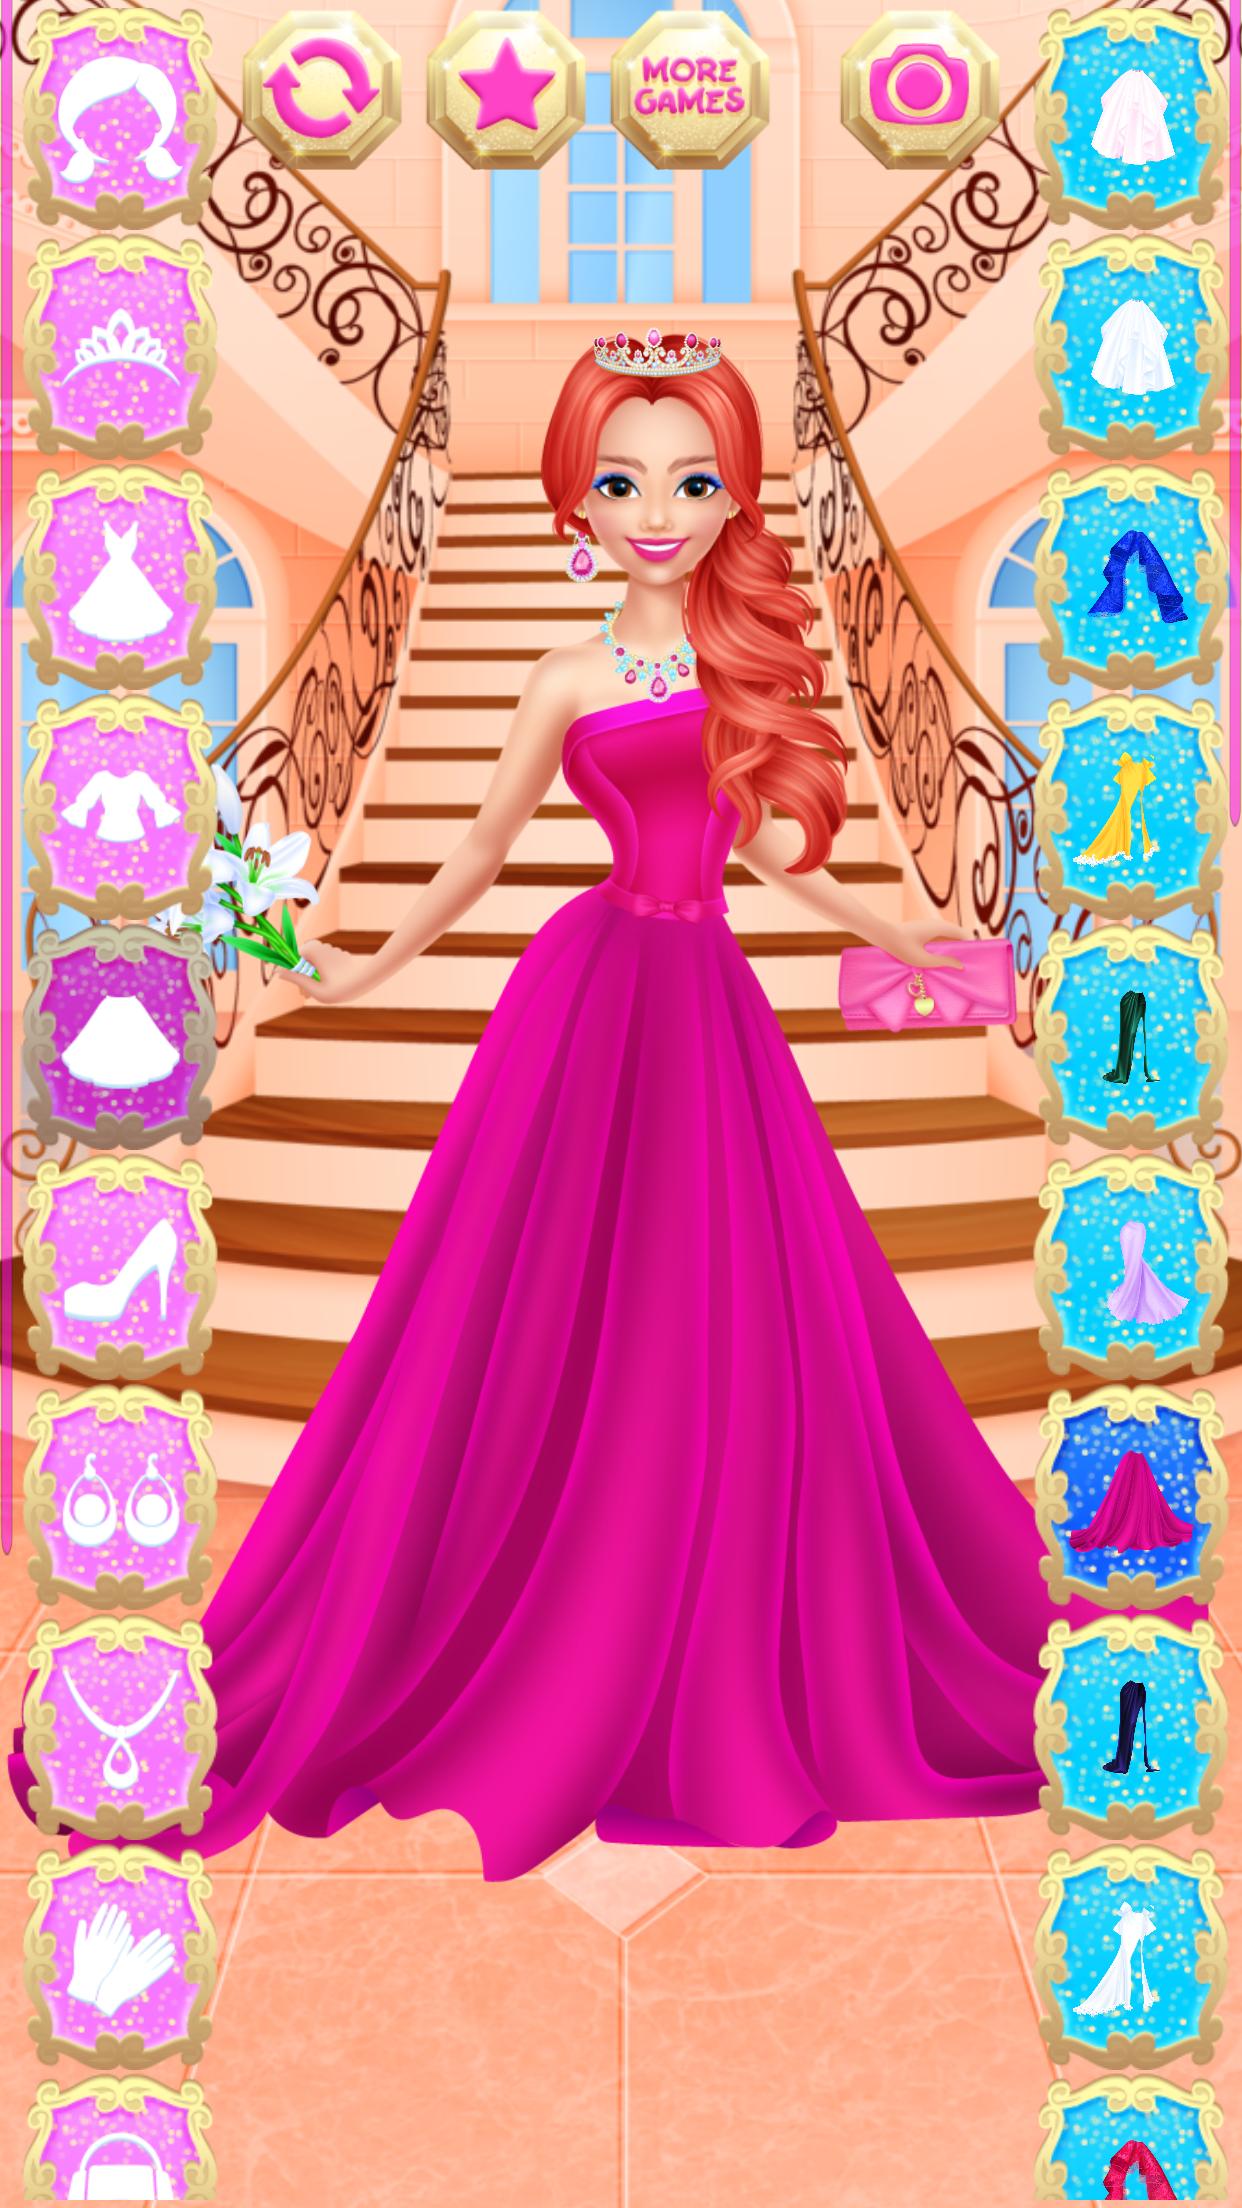 Juego de vestir princesas 3 for Android - APK Download